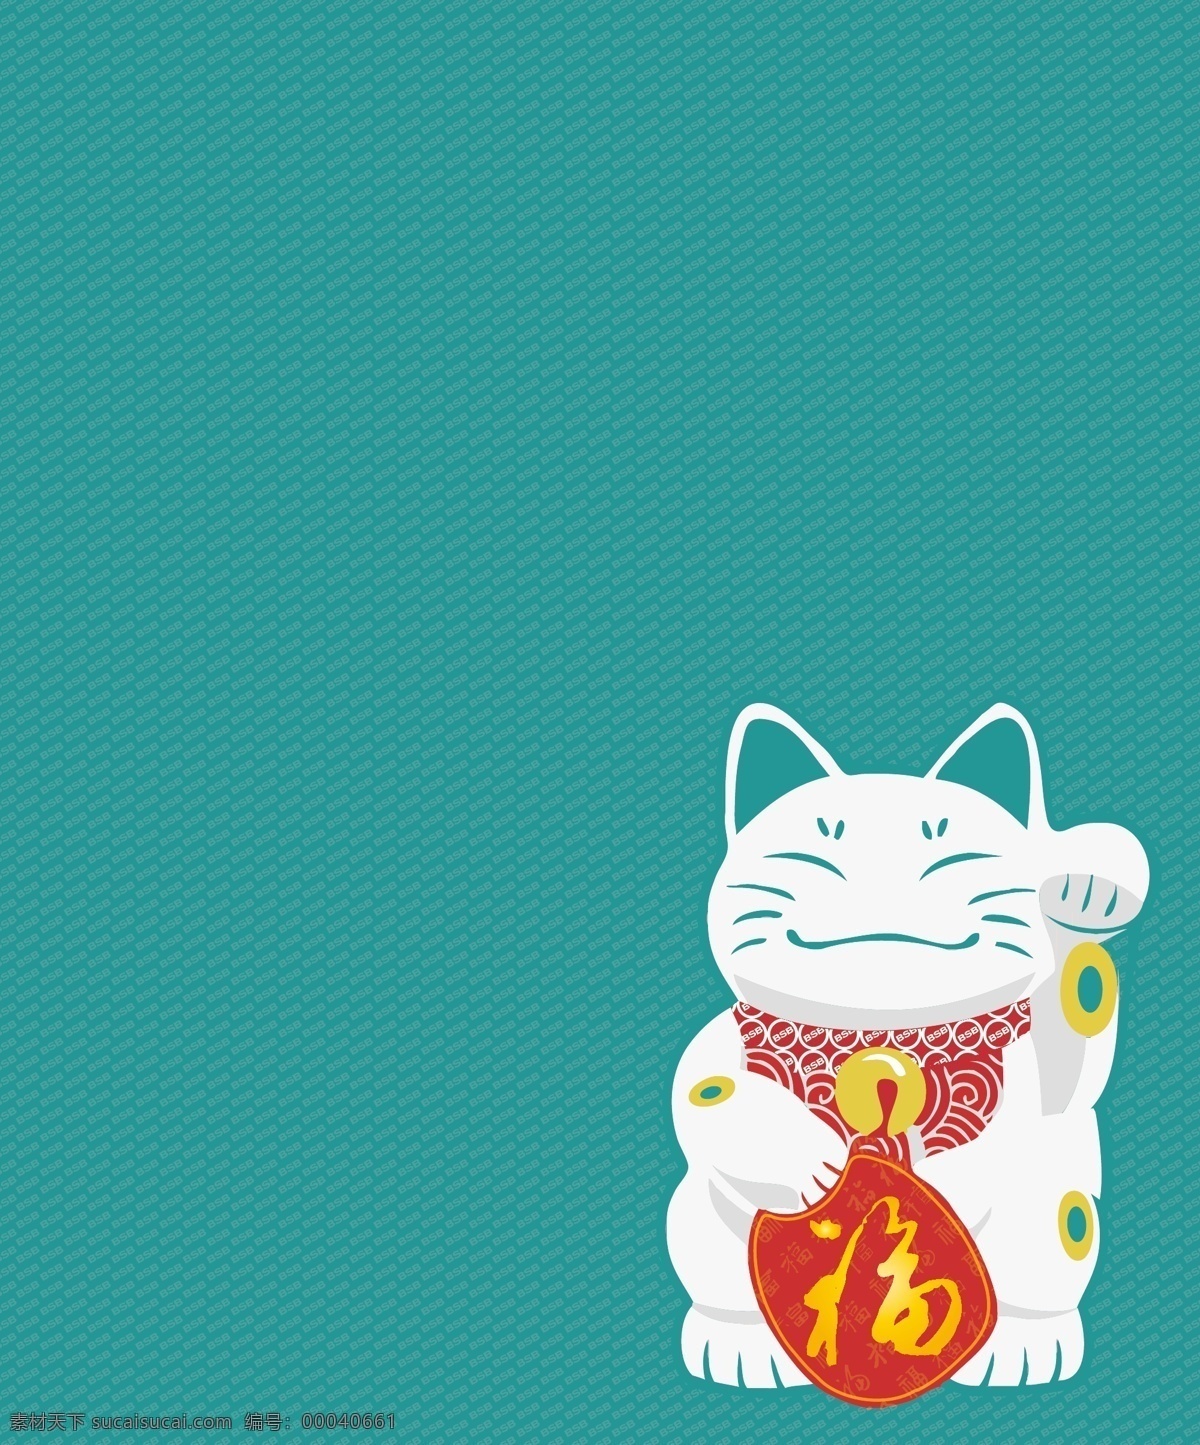 矢量 日 系 新年 招 财 猫 背景 绿色 日系 手绘 卡通 招财猫 海报